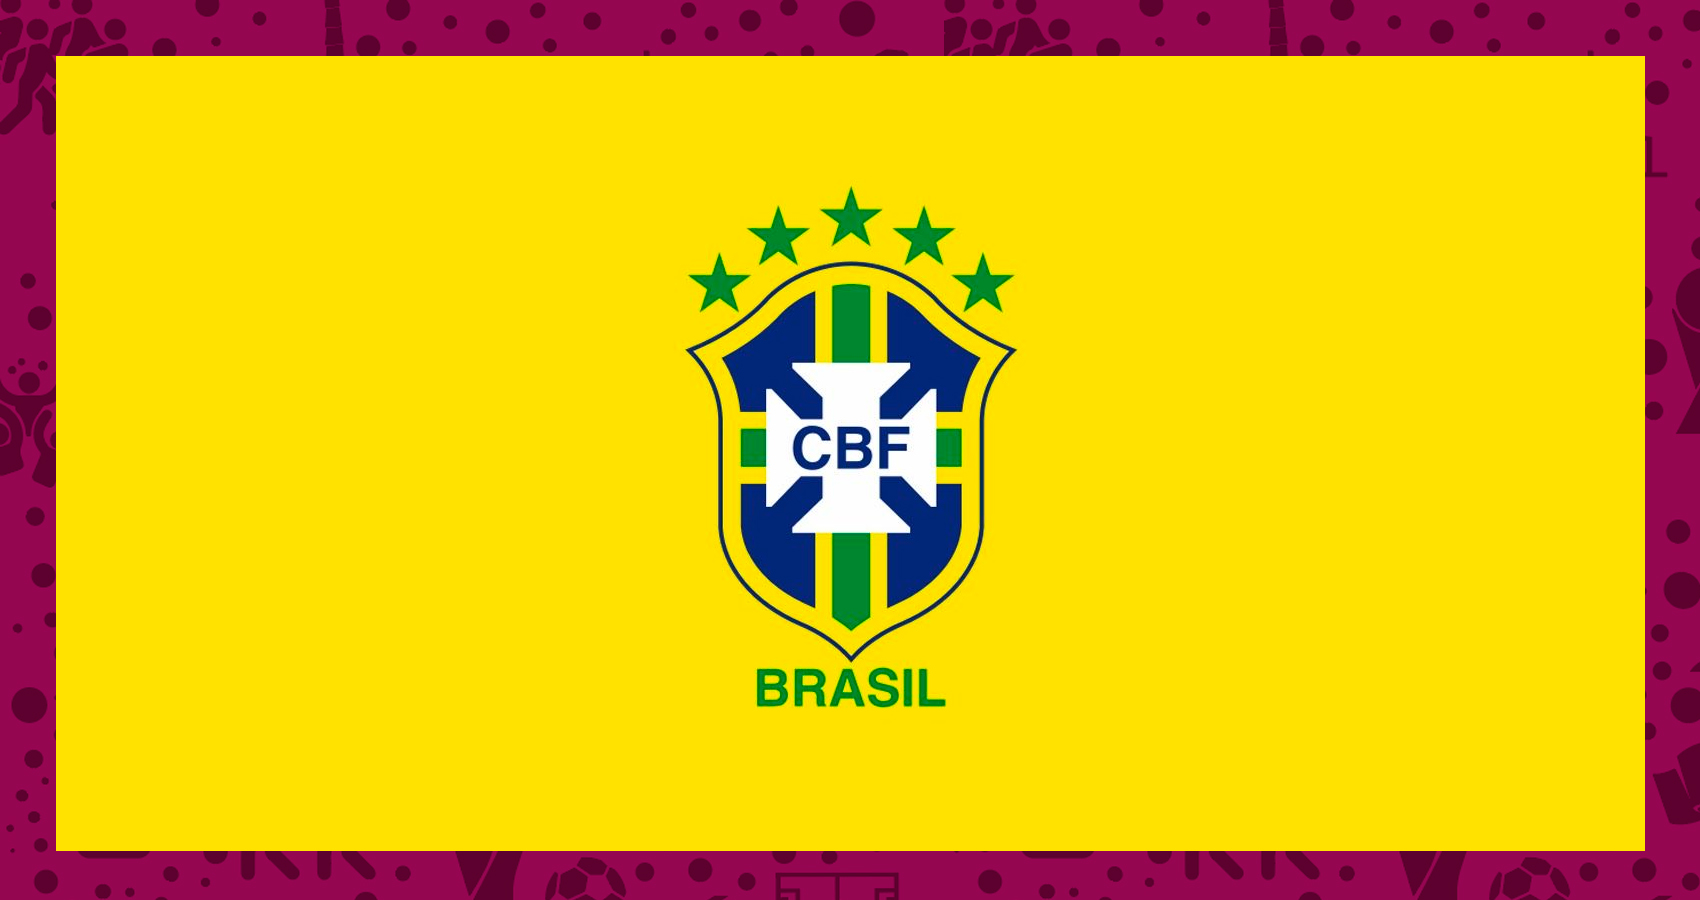 ເຕະບານໂລກ 2022: Brazil, ຄວາມສຸກຂອງຈອກທີ XNUMX?